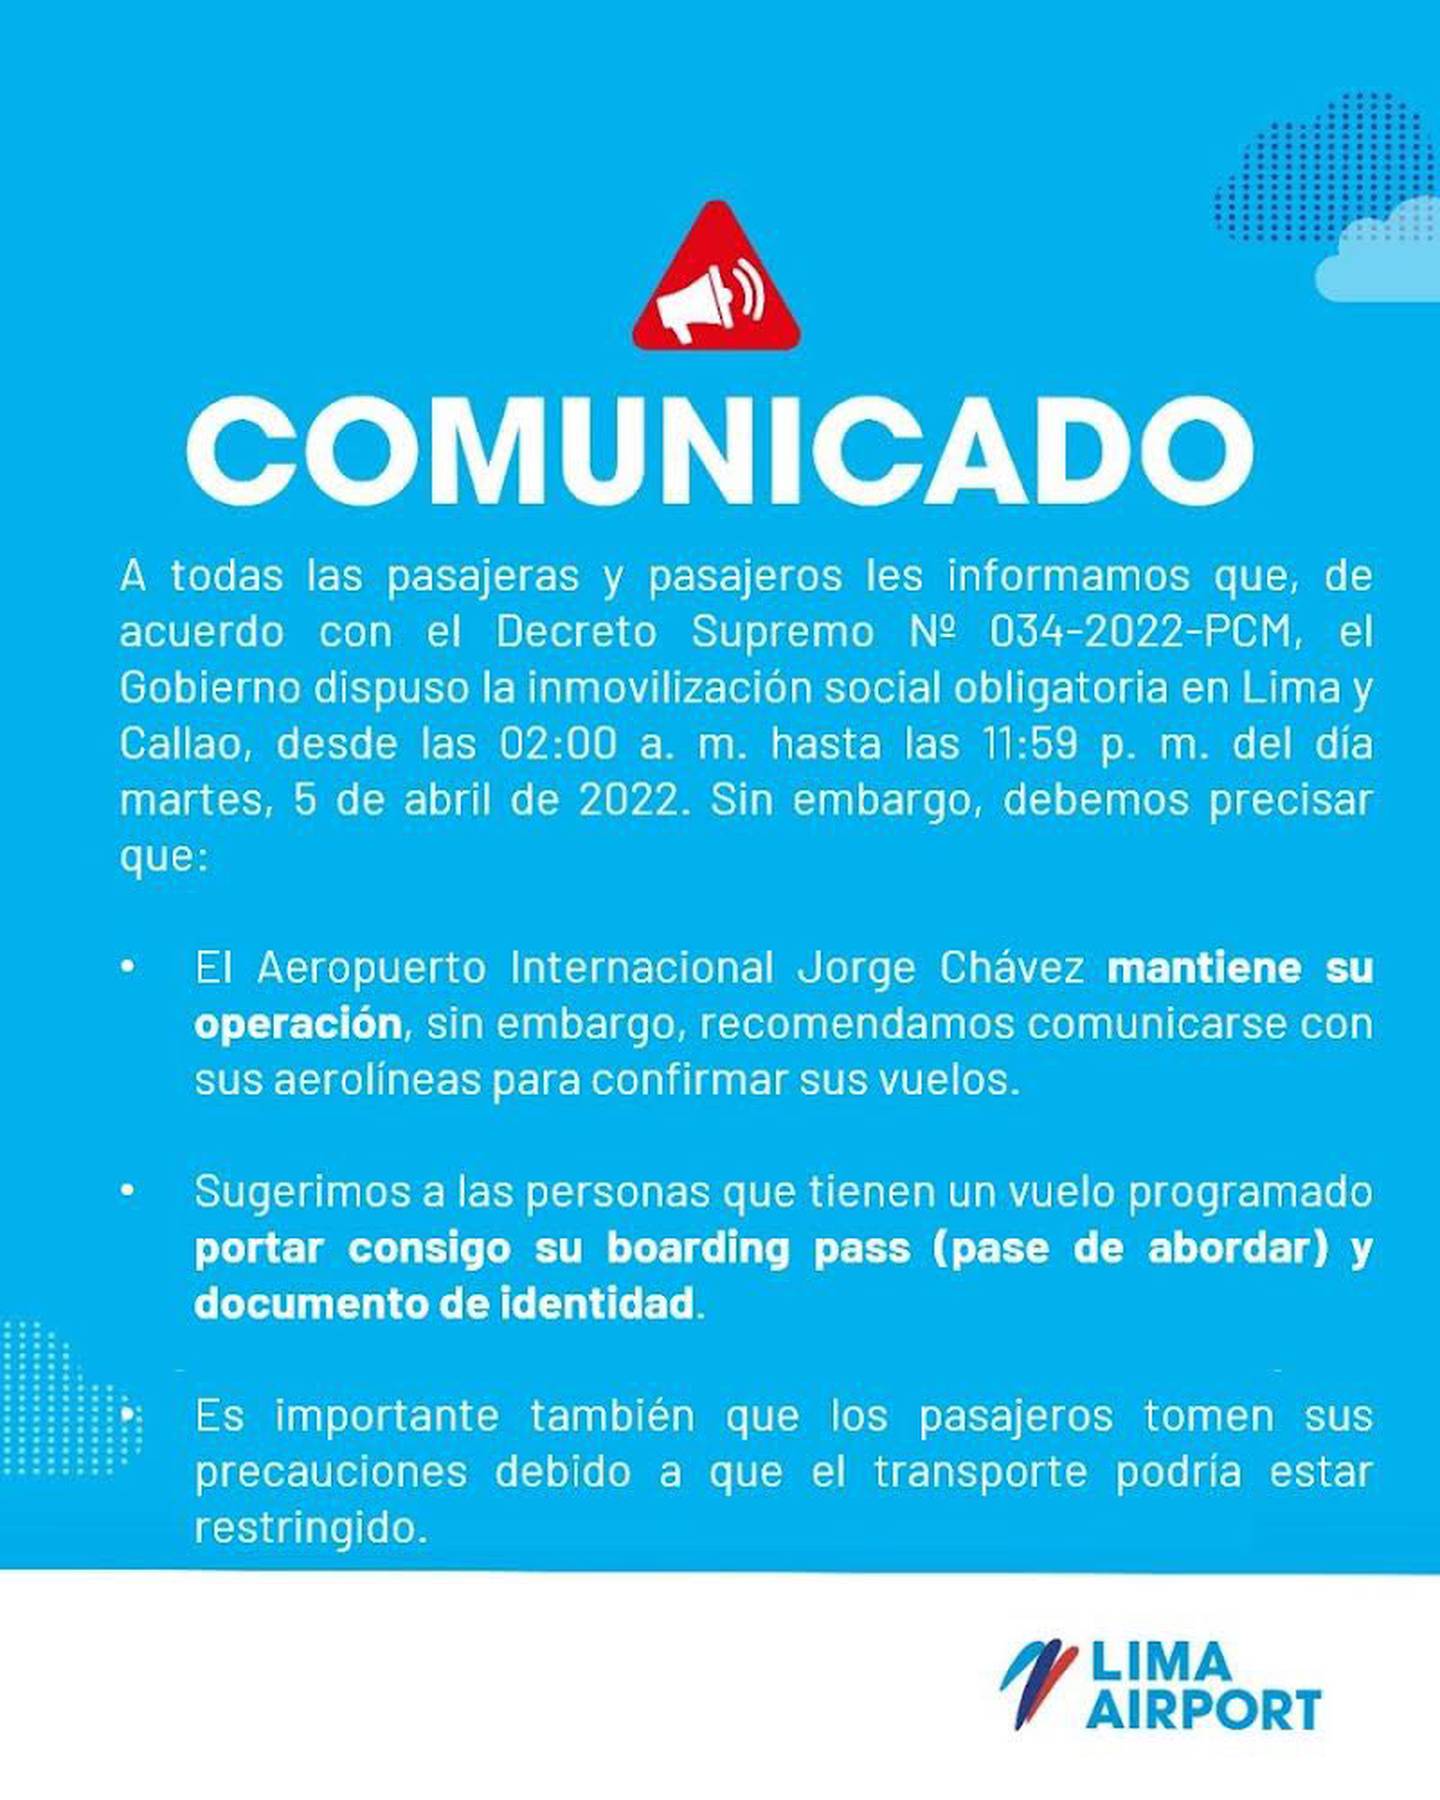 Respecto a la disposición del Gobierno de inmovilización social obligatoria en Lima y Callao, LAP brindó el siguiente comunicado.dfd